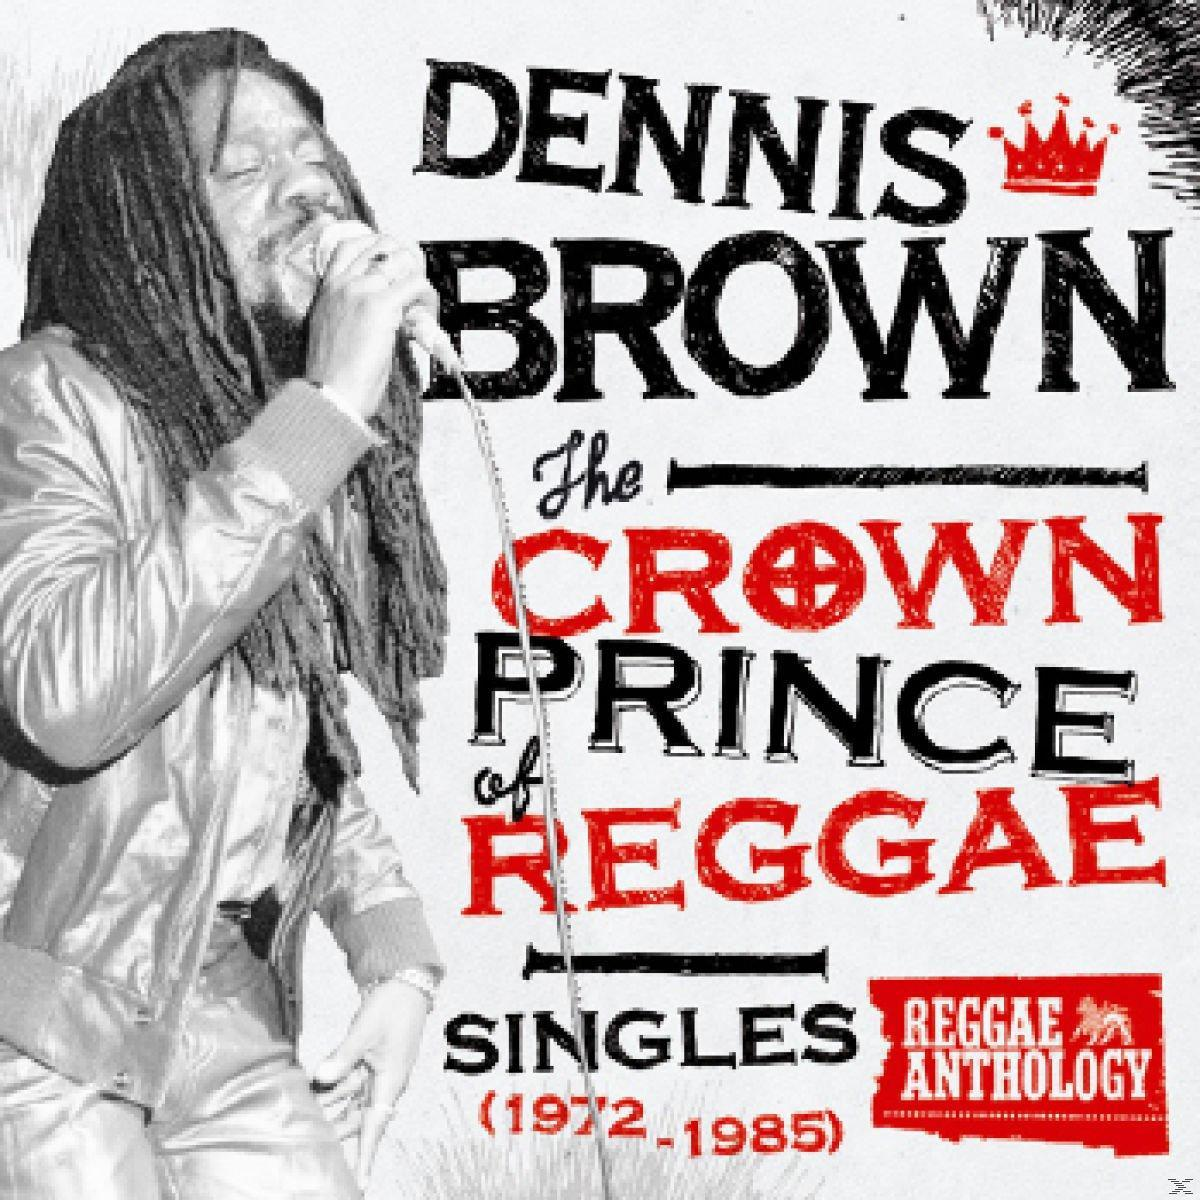 Dennis Brown - Crown Prince Reggae (Vinyl) - Of